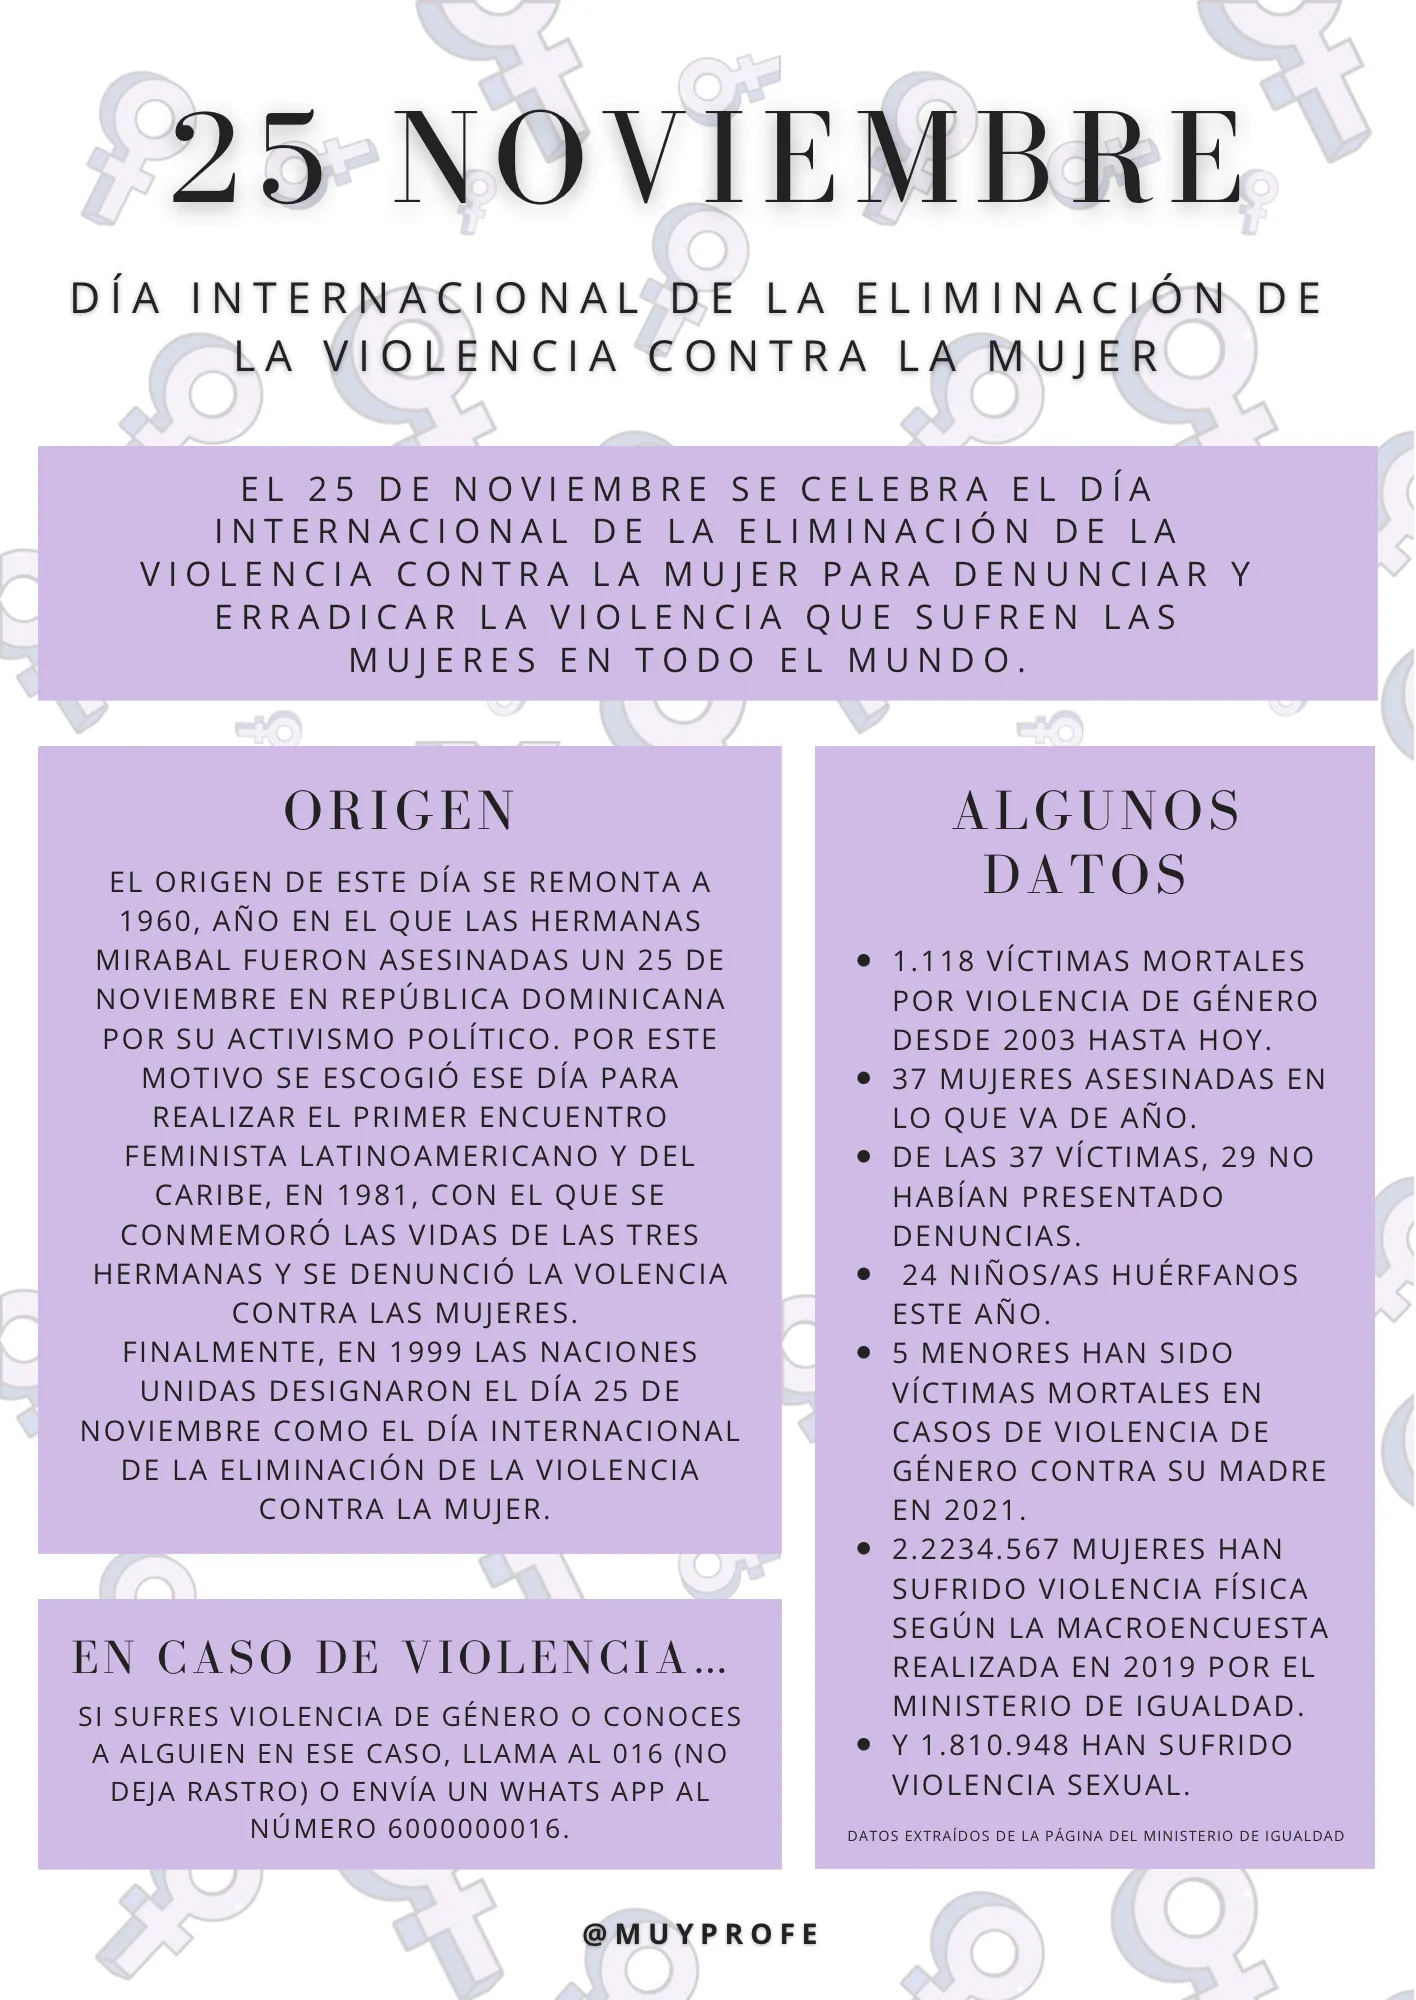 25 NOVIEMBRE - DÍA INTERNACIONAL DE LA ELIMINACIÓN DE LA VIOLENCIA CONTRA LA MUJER